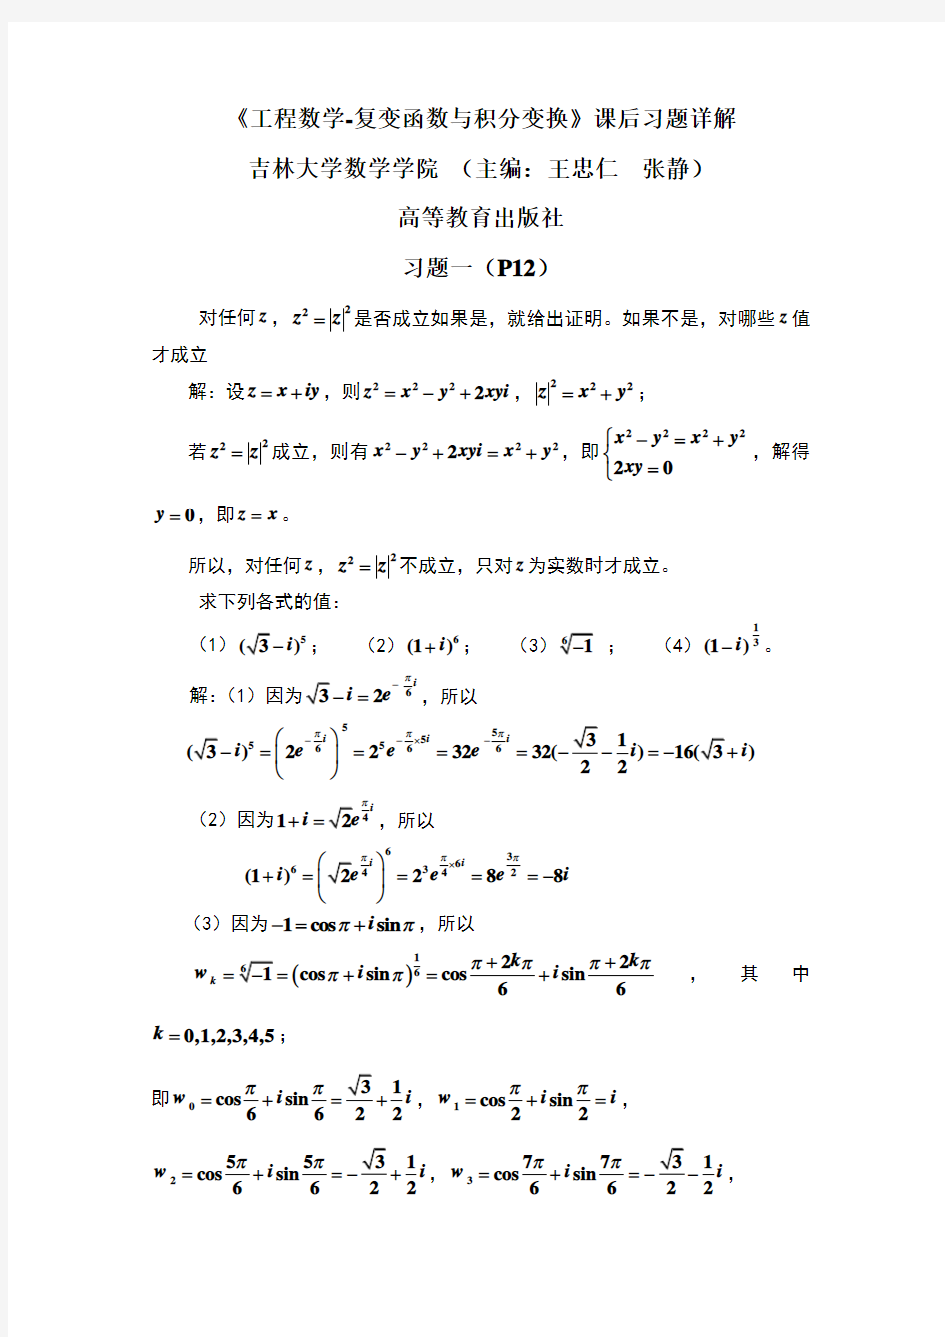 工程数学-复变函数与积分变换吉林大学数学学院习题详解